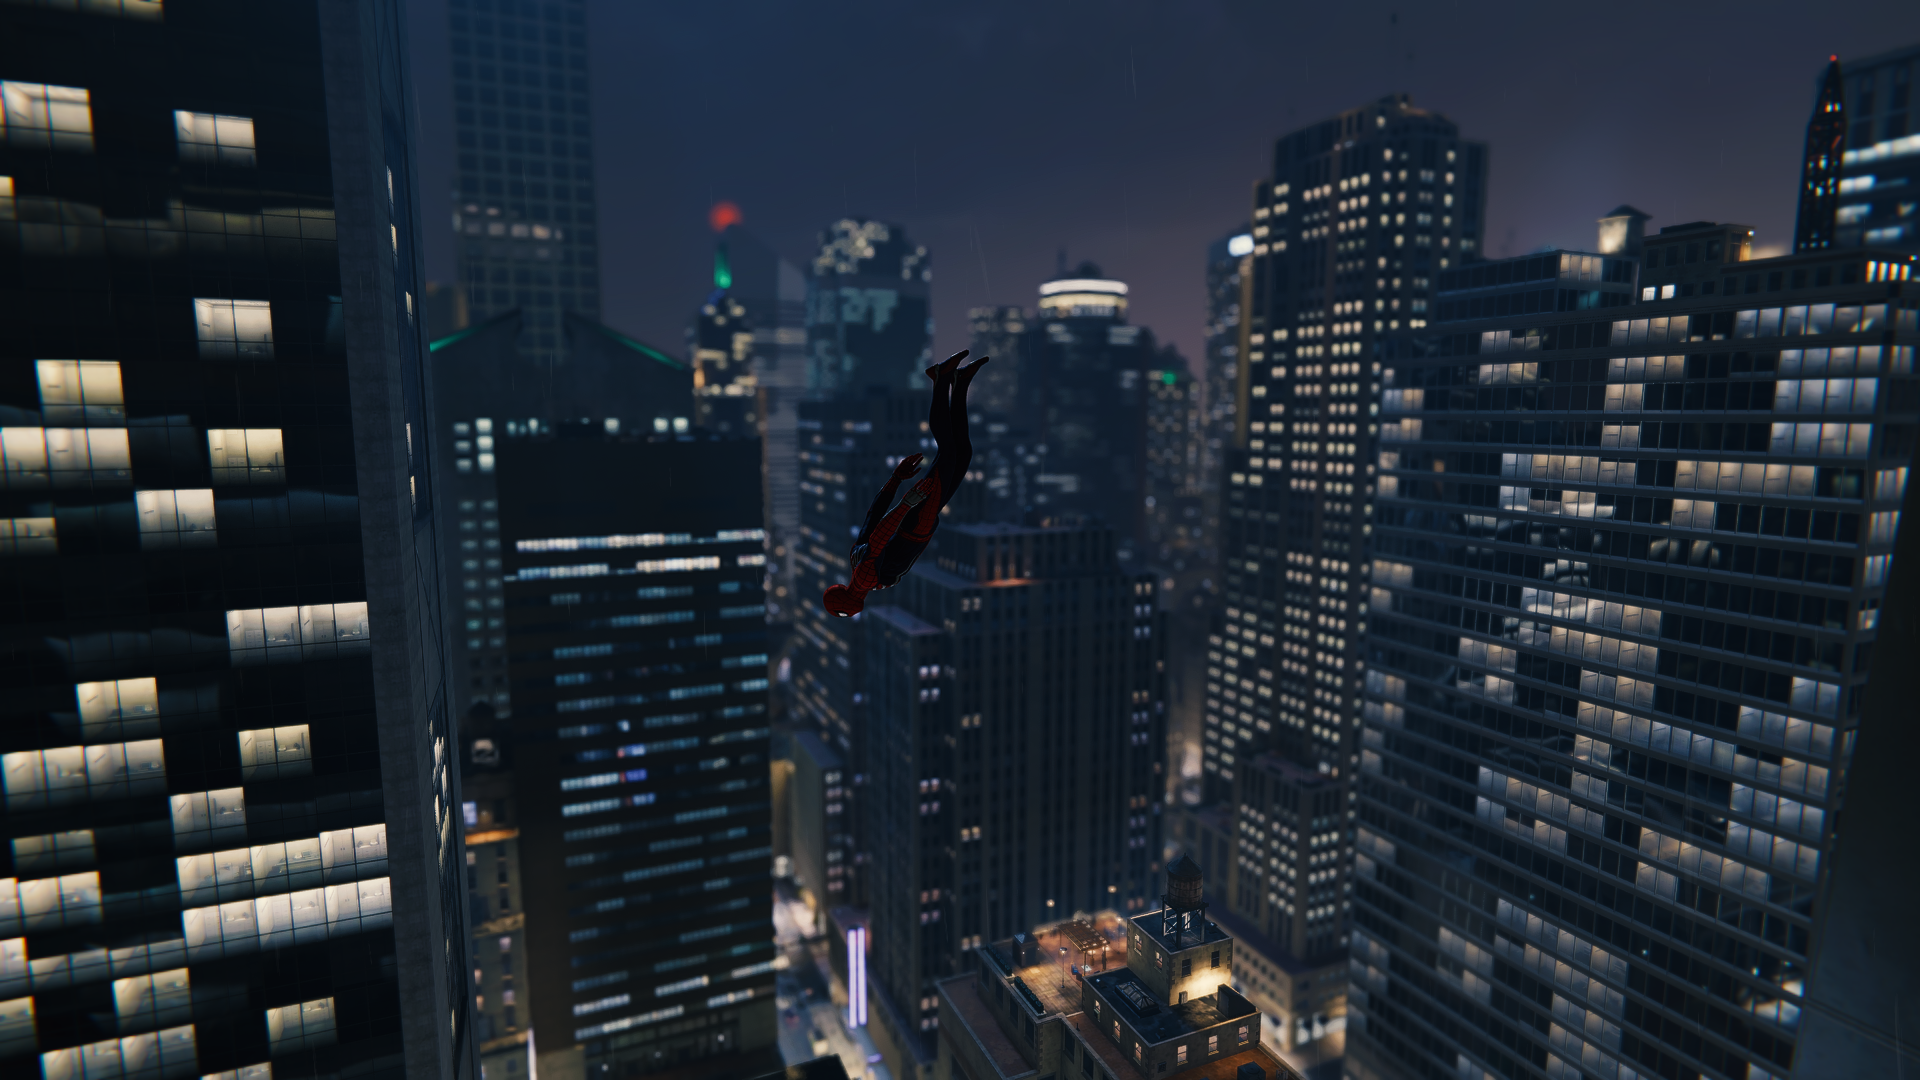 Spider-Man: Remastered Screenshots (PC) by OmarELJoker on DeviantArt